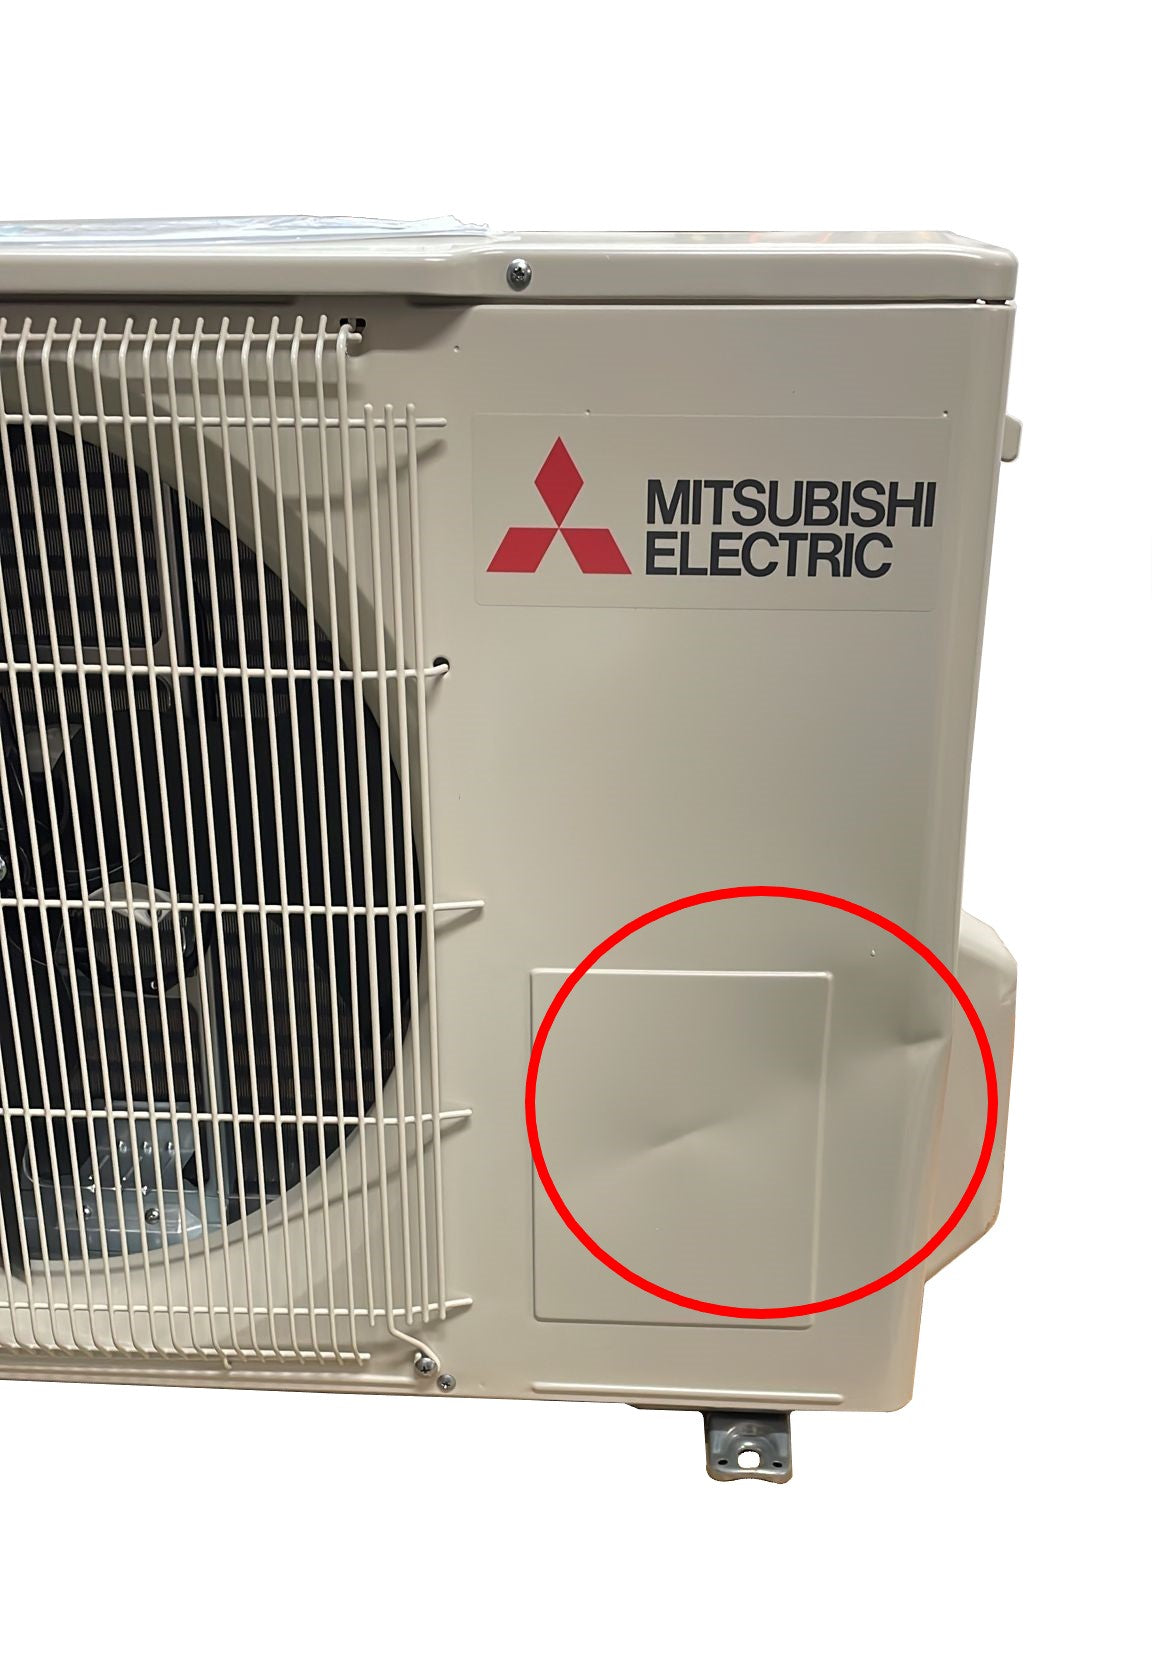 immagine-5-mitsubishi-electric-area-occasioni-climatizzatore-condizionatore-mitsubishi-electric-inverter-serie-dw-12000-btu-msz-dw35vf-r-32-wi-fi-optional